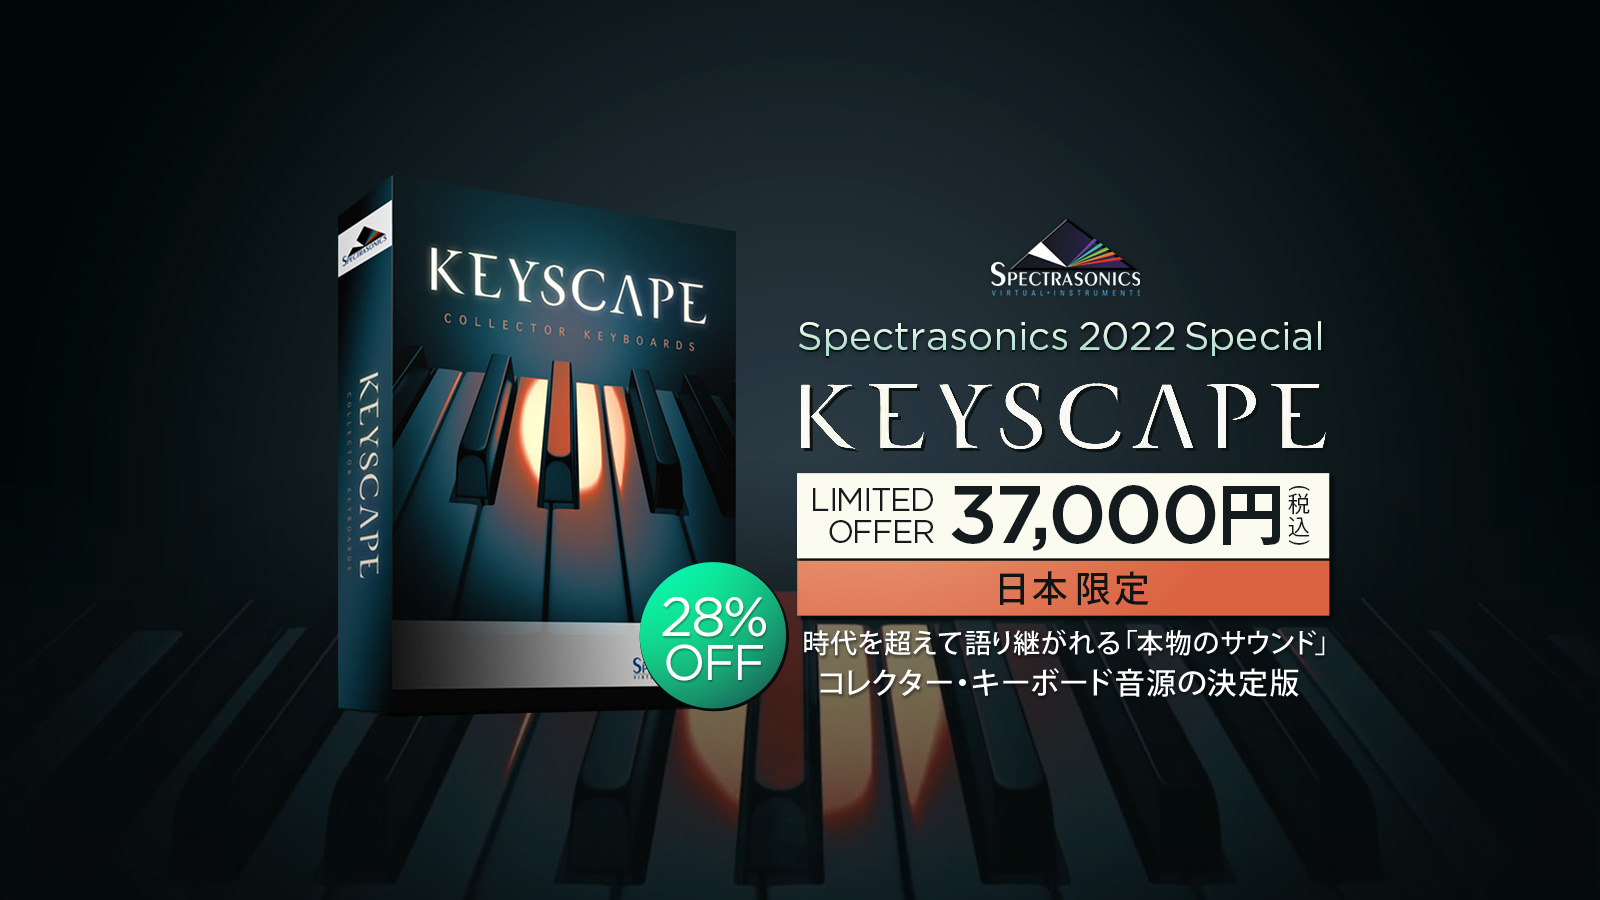 現在当店では、コレクター・キーボード音源の決定版「Keyscape」を8/14(日)までの期間、 通常価格¥52,000(税込)　⇒　日本限定特別価格¥37,000(税込)でご提供いたします！ 当店に1台在庫がございますので、すぐお渡しが可能です。残り期間わずかとなっておりますので、ぜひお問合せ下さ […]